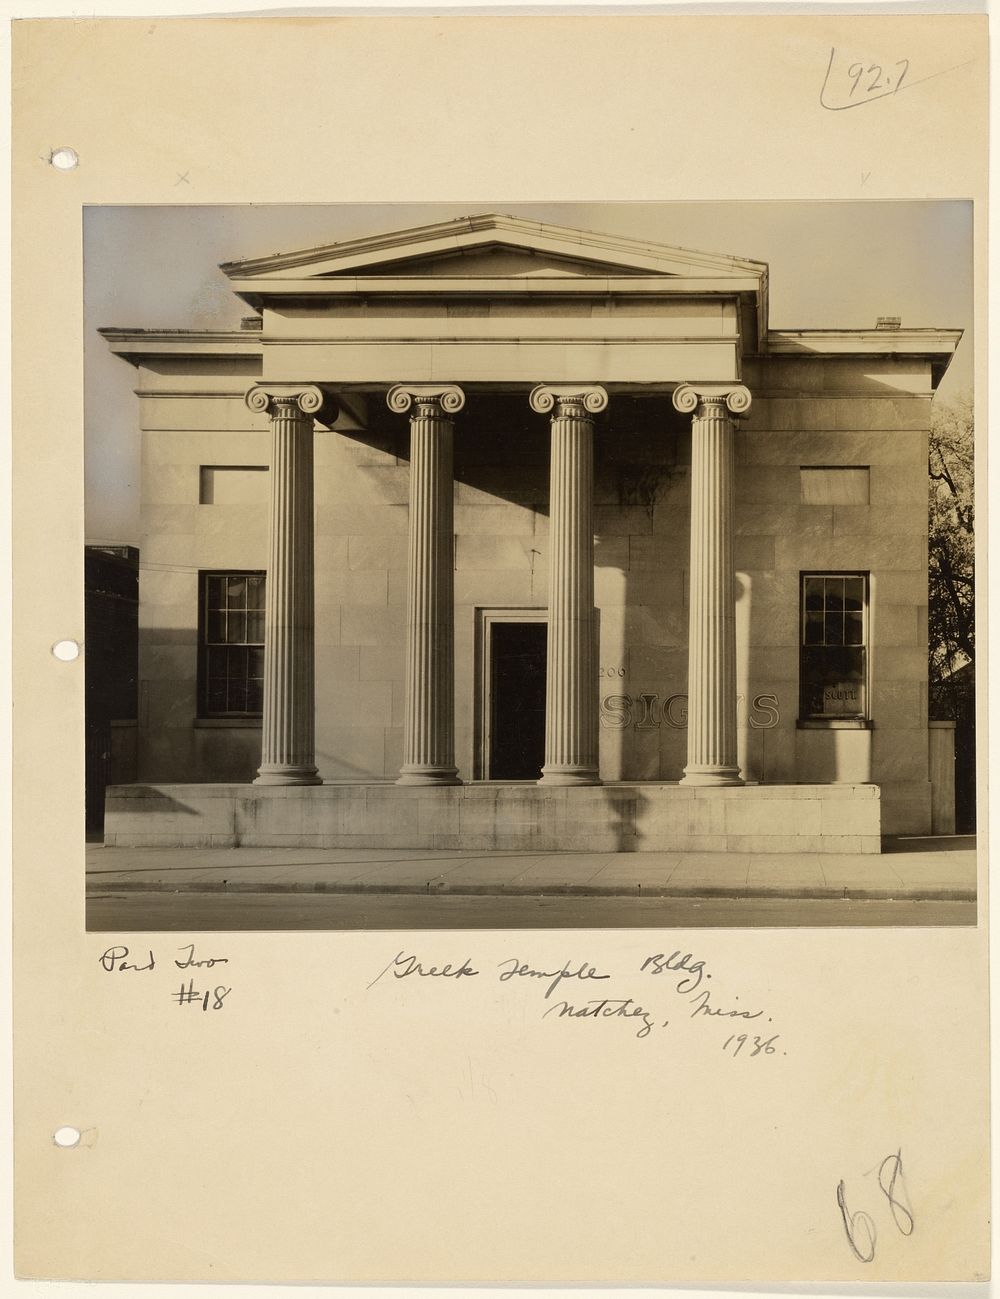 Greek Temple Building, Natchez, Mississippi / Old Commercial Building, Erected 1809, 206 Main Street, Natchez, Mississippi…